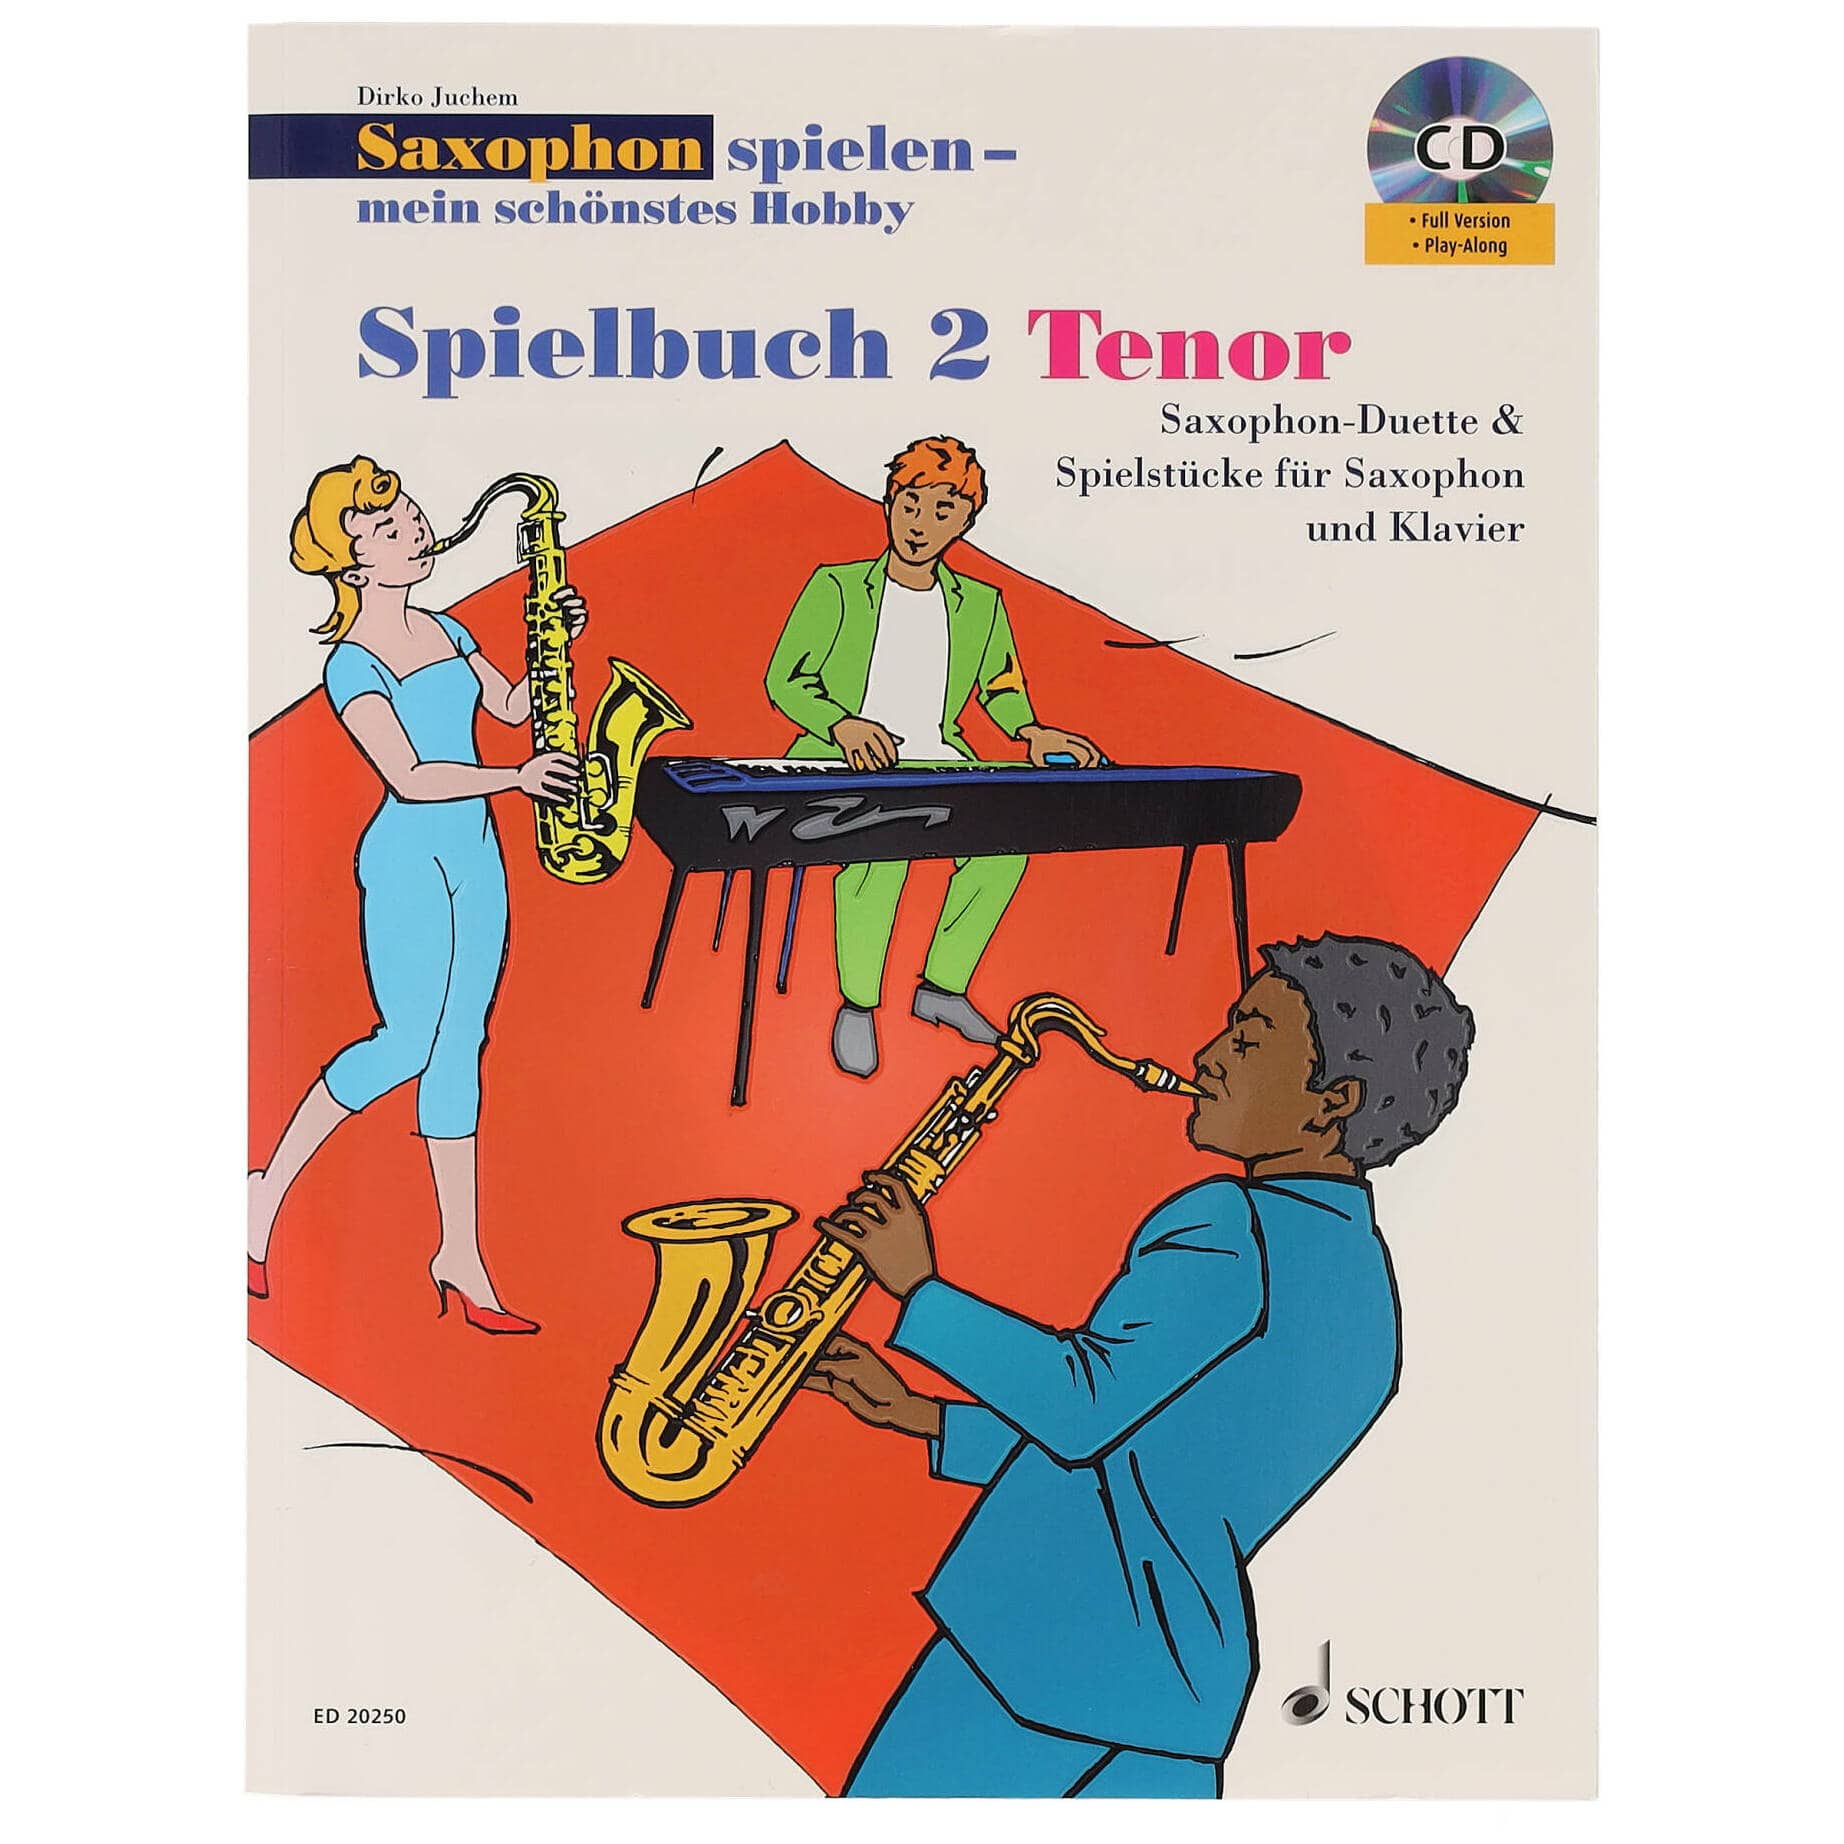 Schott Dirko Juchem - Saxophon spielen - mein schönstes Hobby - Spielbuch 2 Tenorsaxophon